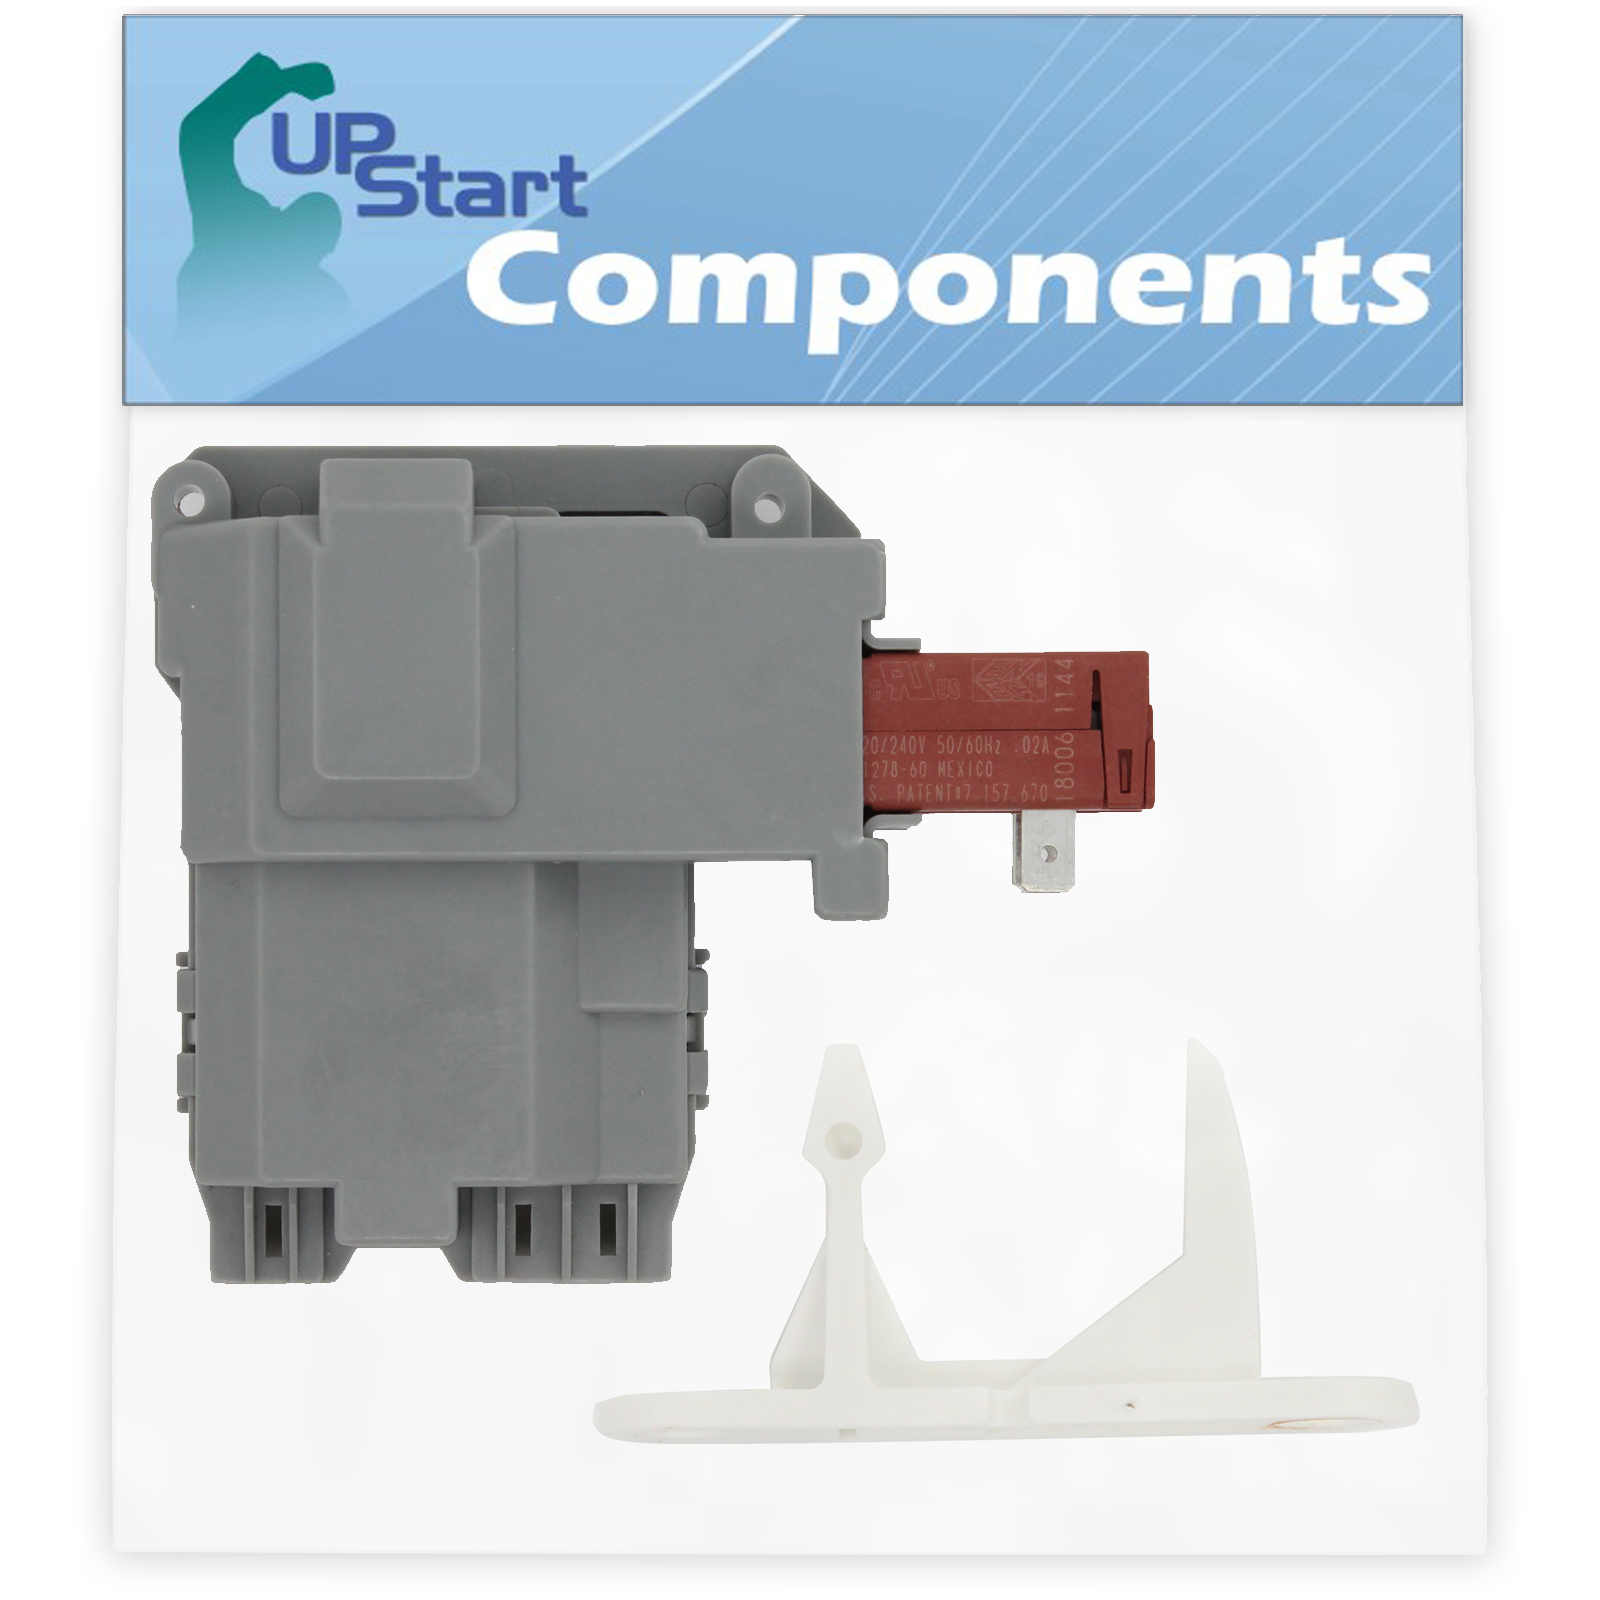 UpStart Components 131763202 Washer Door Latch & 131763310 Door Striker Replacement for Kenmore / Sears 41748102701 Washing Machine